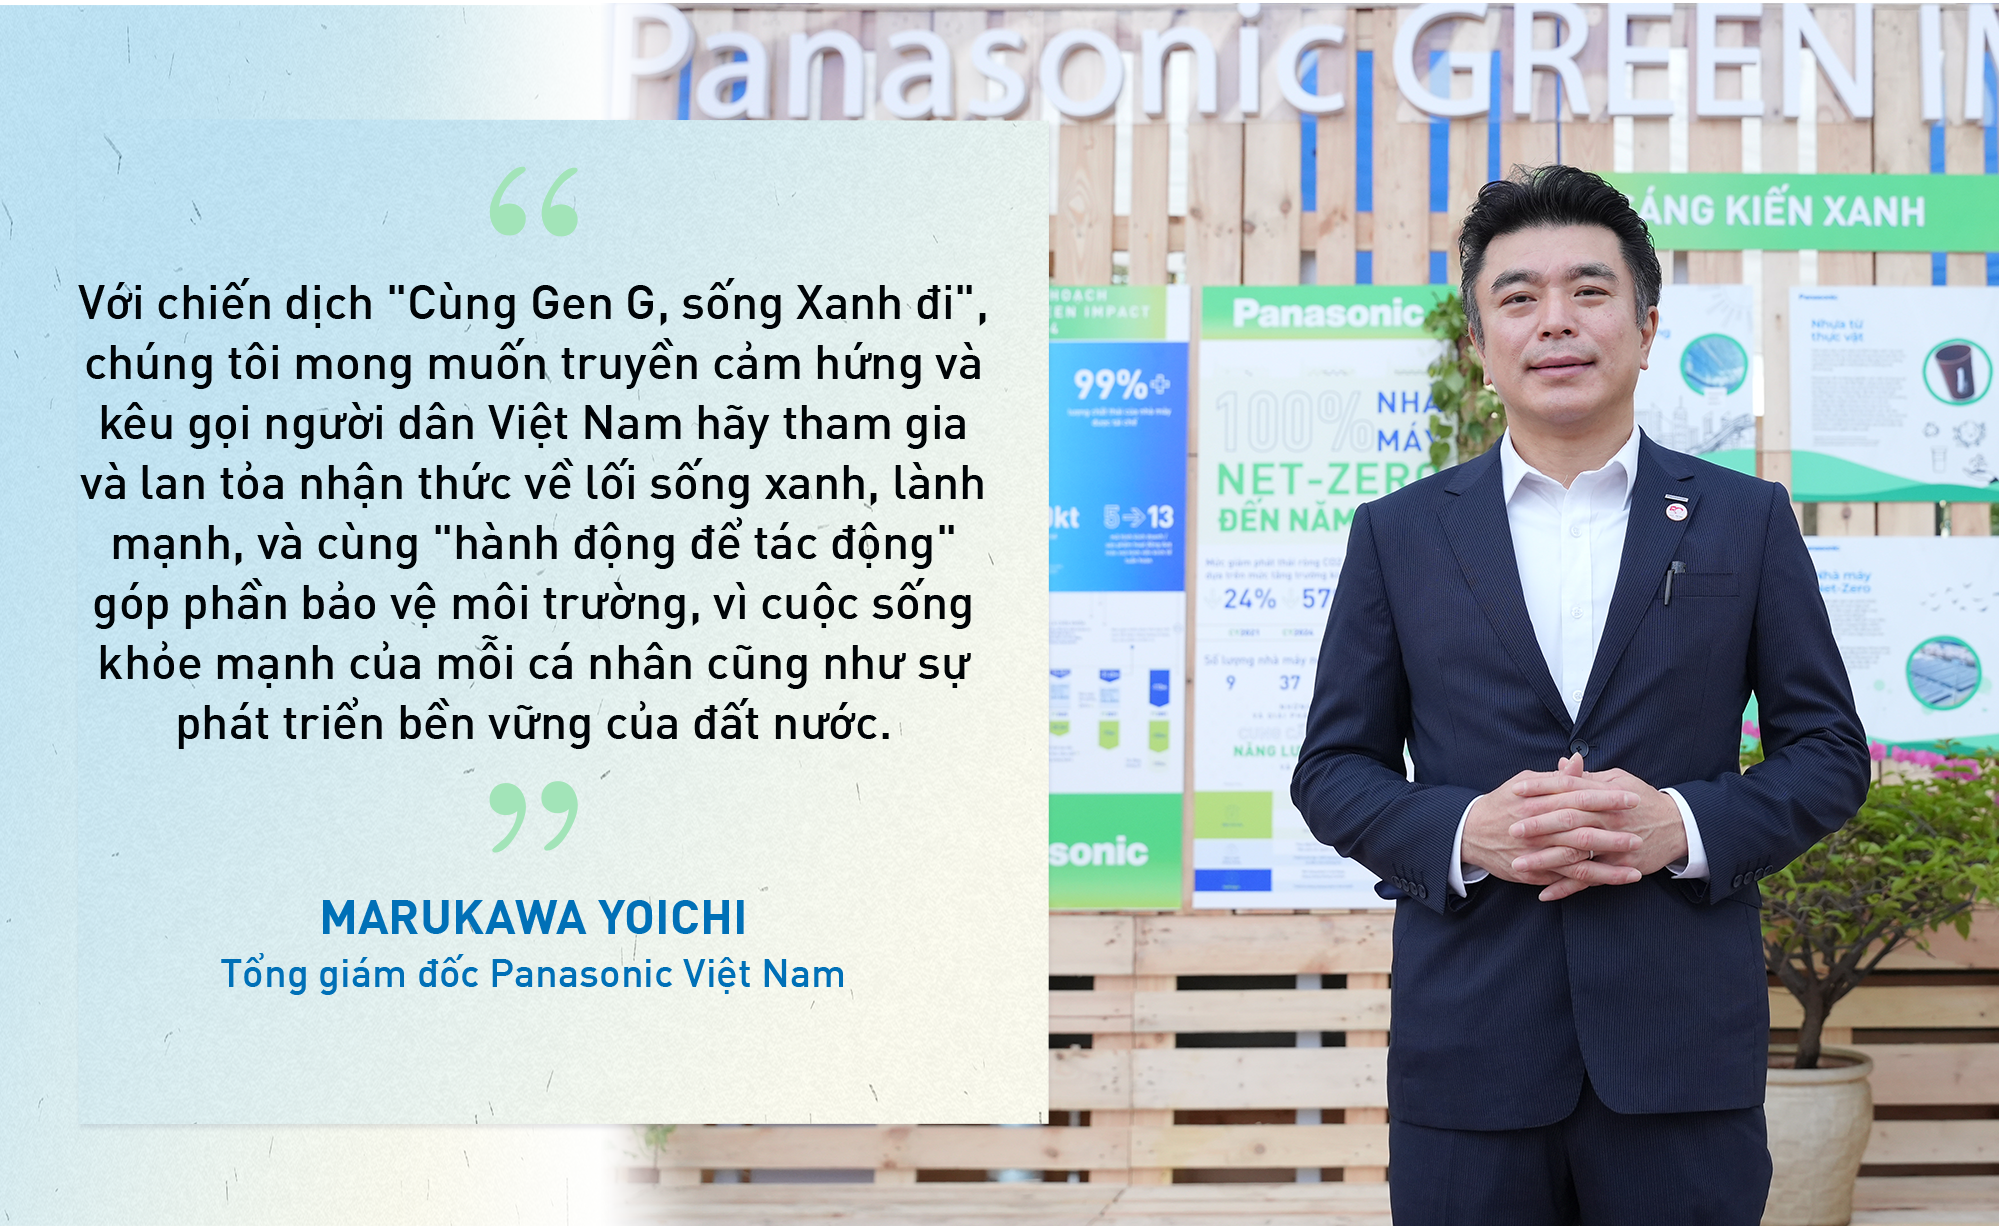 Panasonic cùng Gen G tạo tác động xanh vì một Việt Nam bền vững - Ảnh 3.